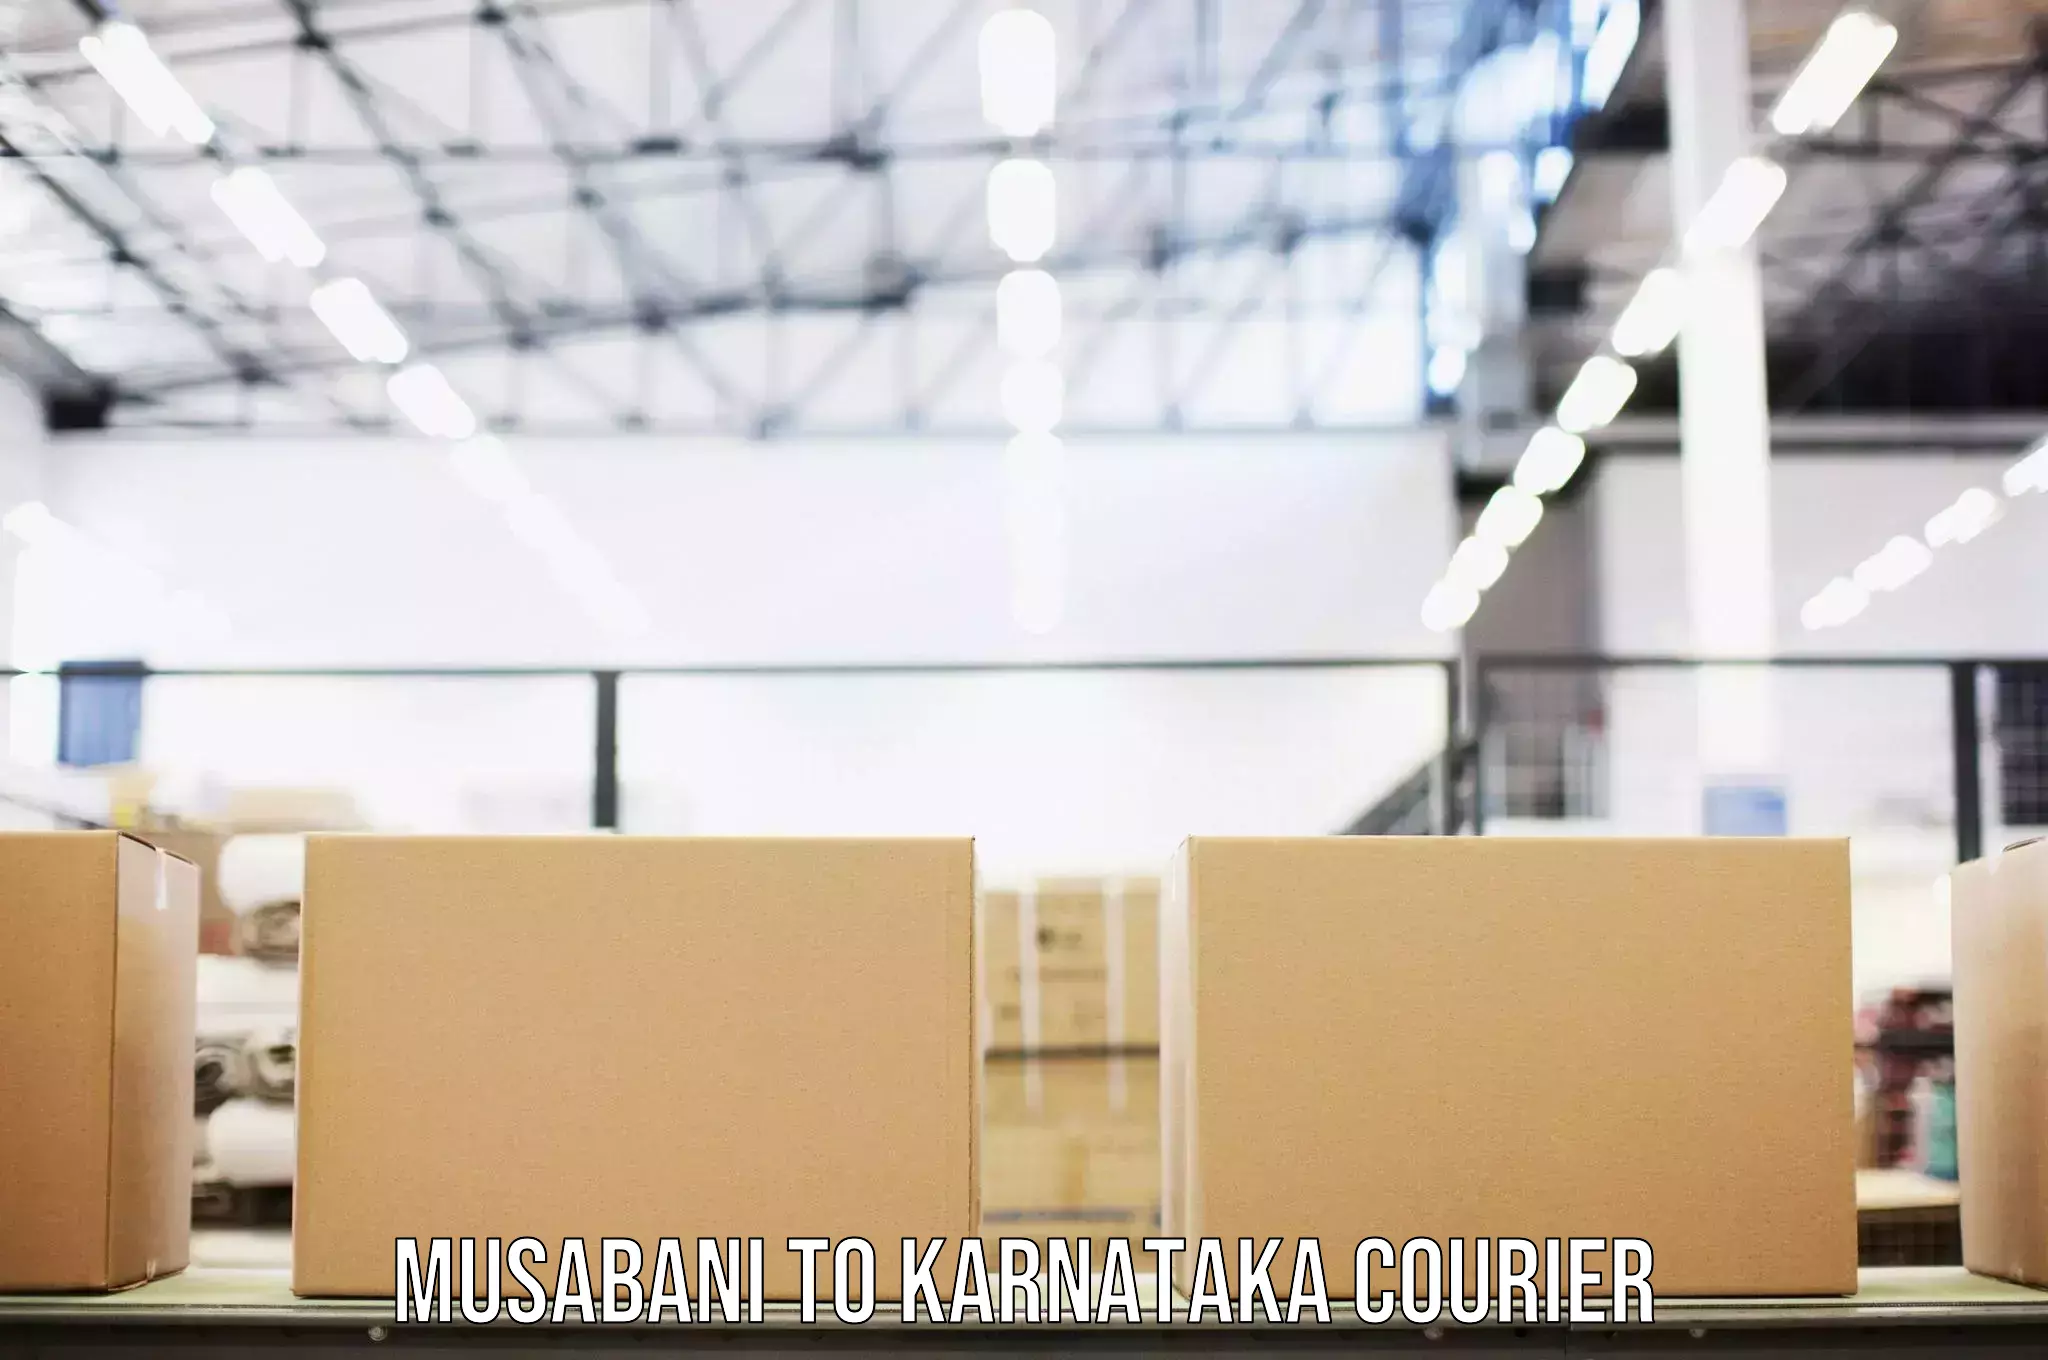 Baggage transport scheduler Musabani to Karnataka